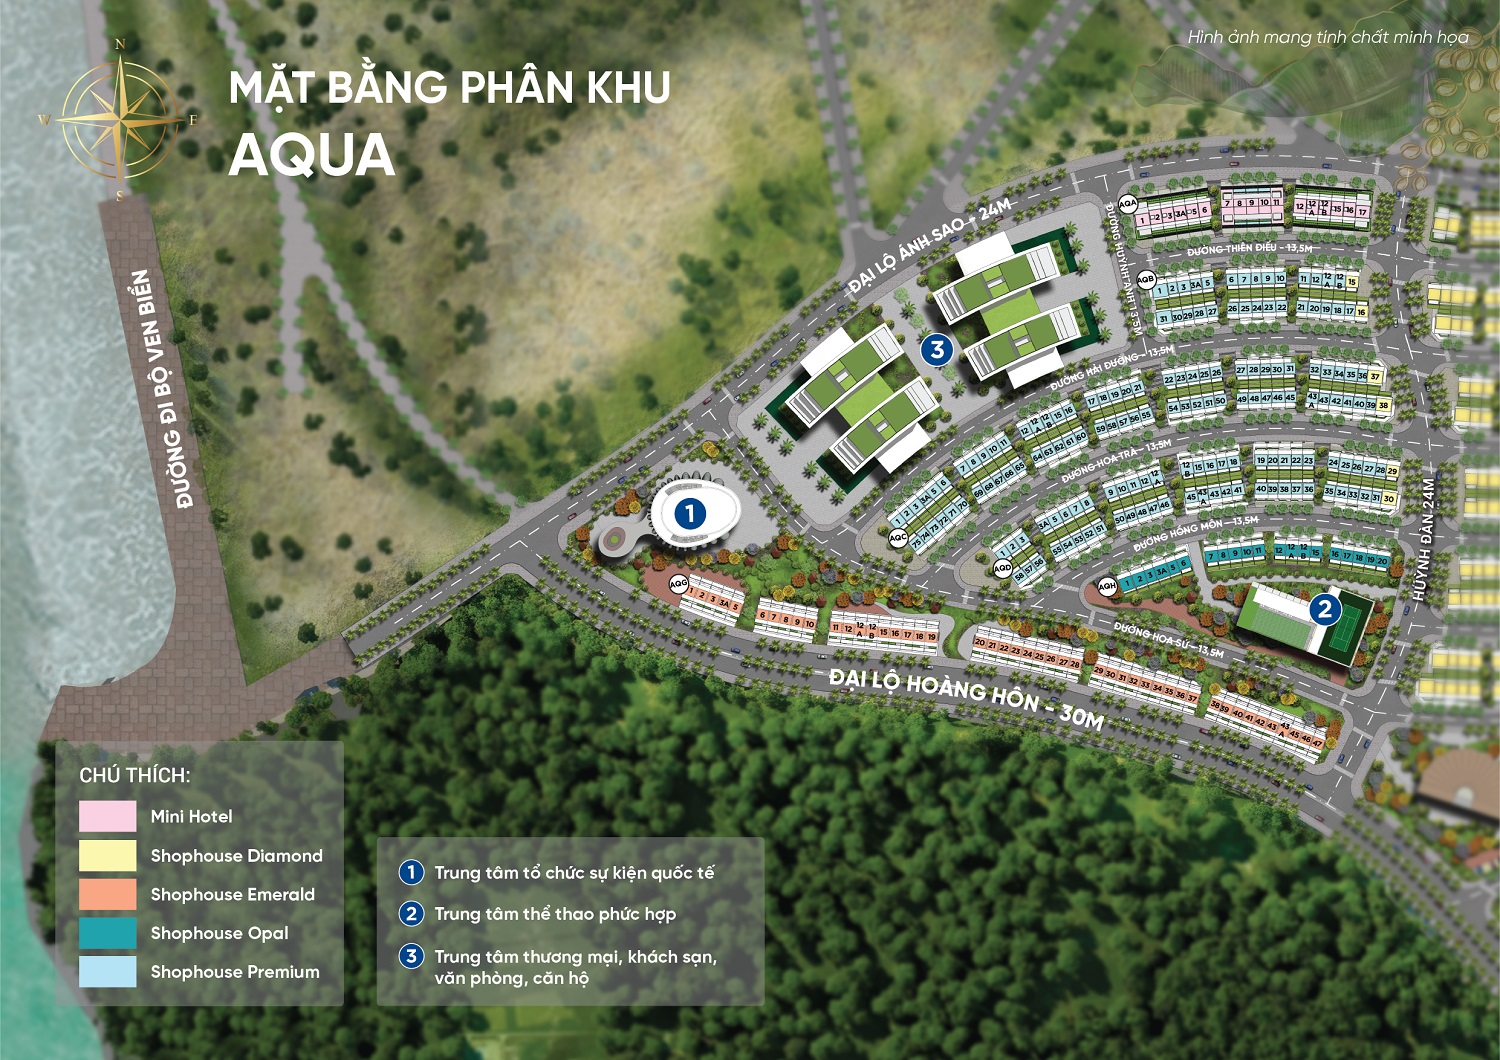 Mặt bằng mô tả vị trí các lô Shophouse và Mini Hotel Meyhomes Capital Phú Quốc - Phân khu Aqua